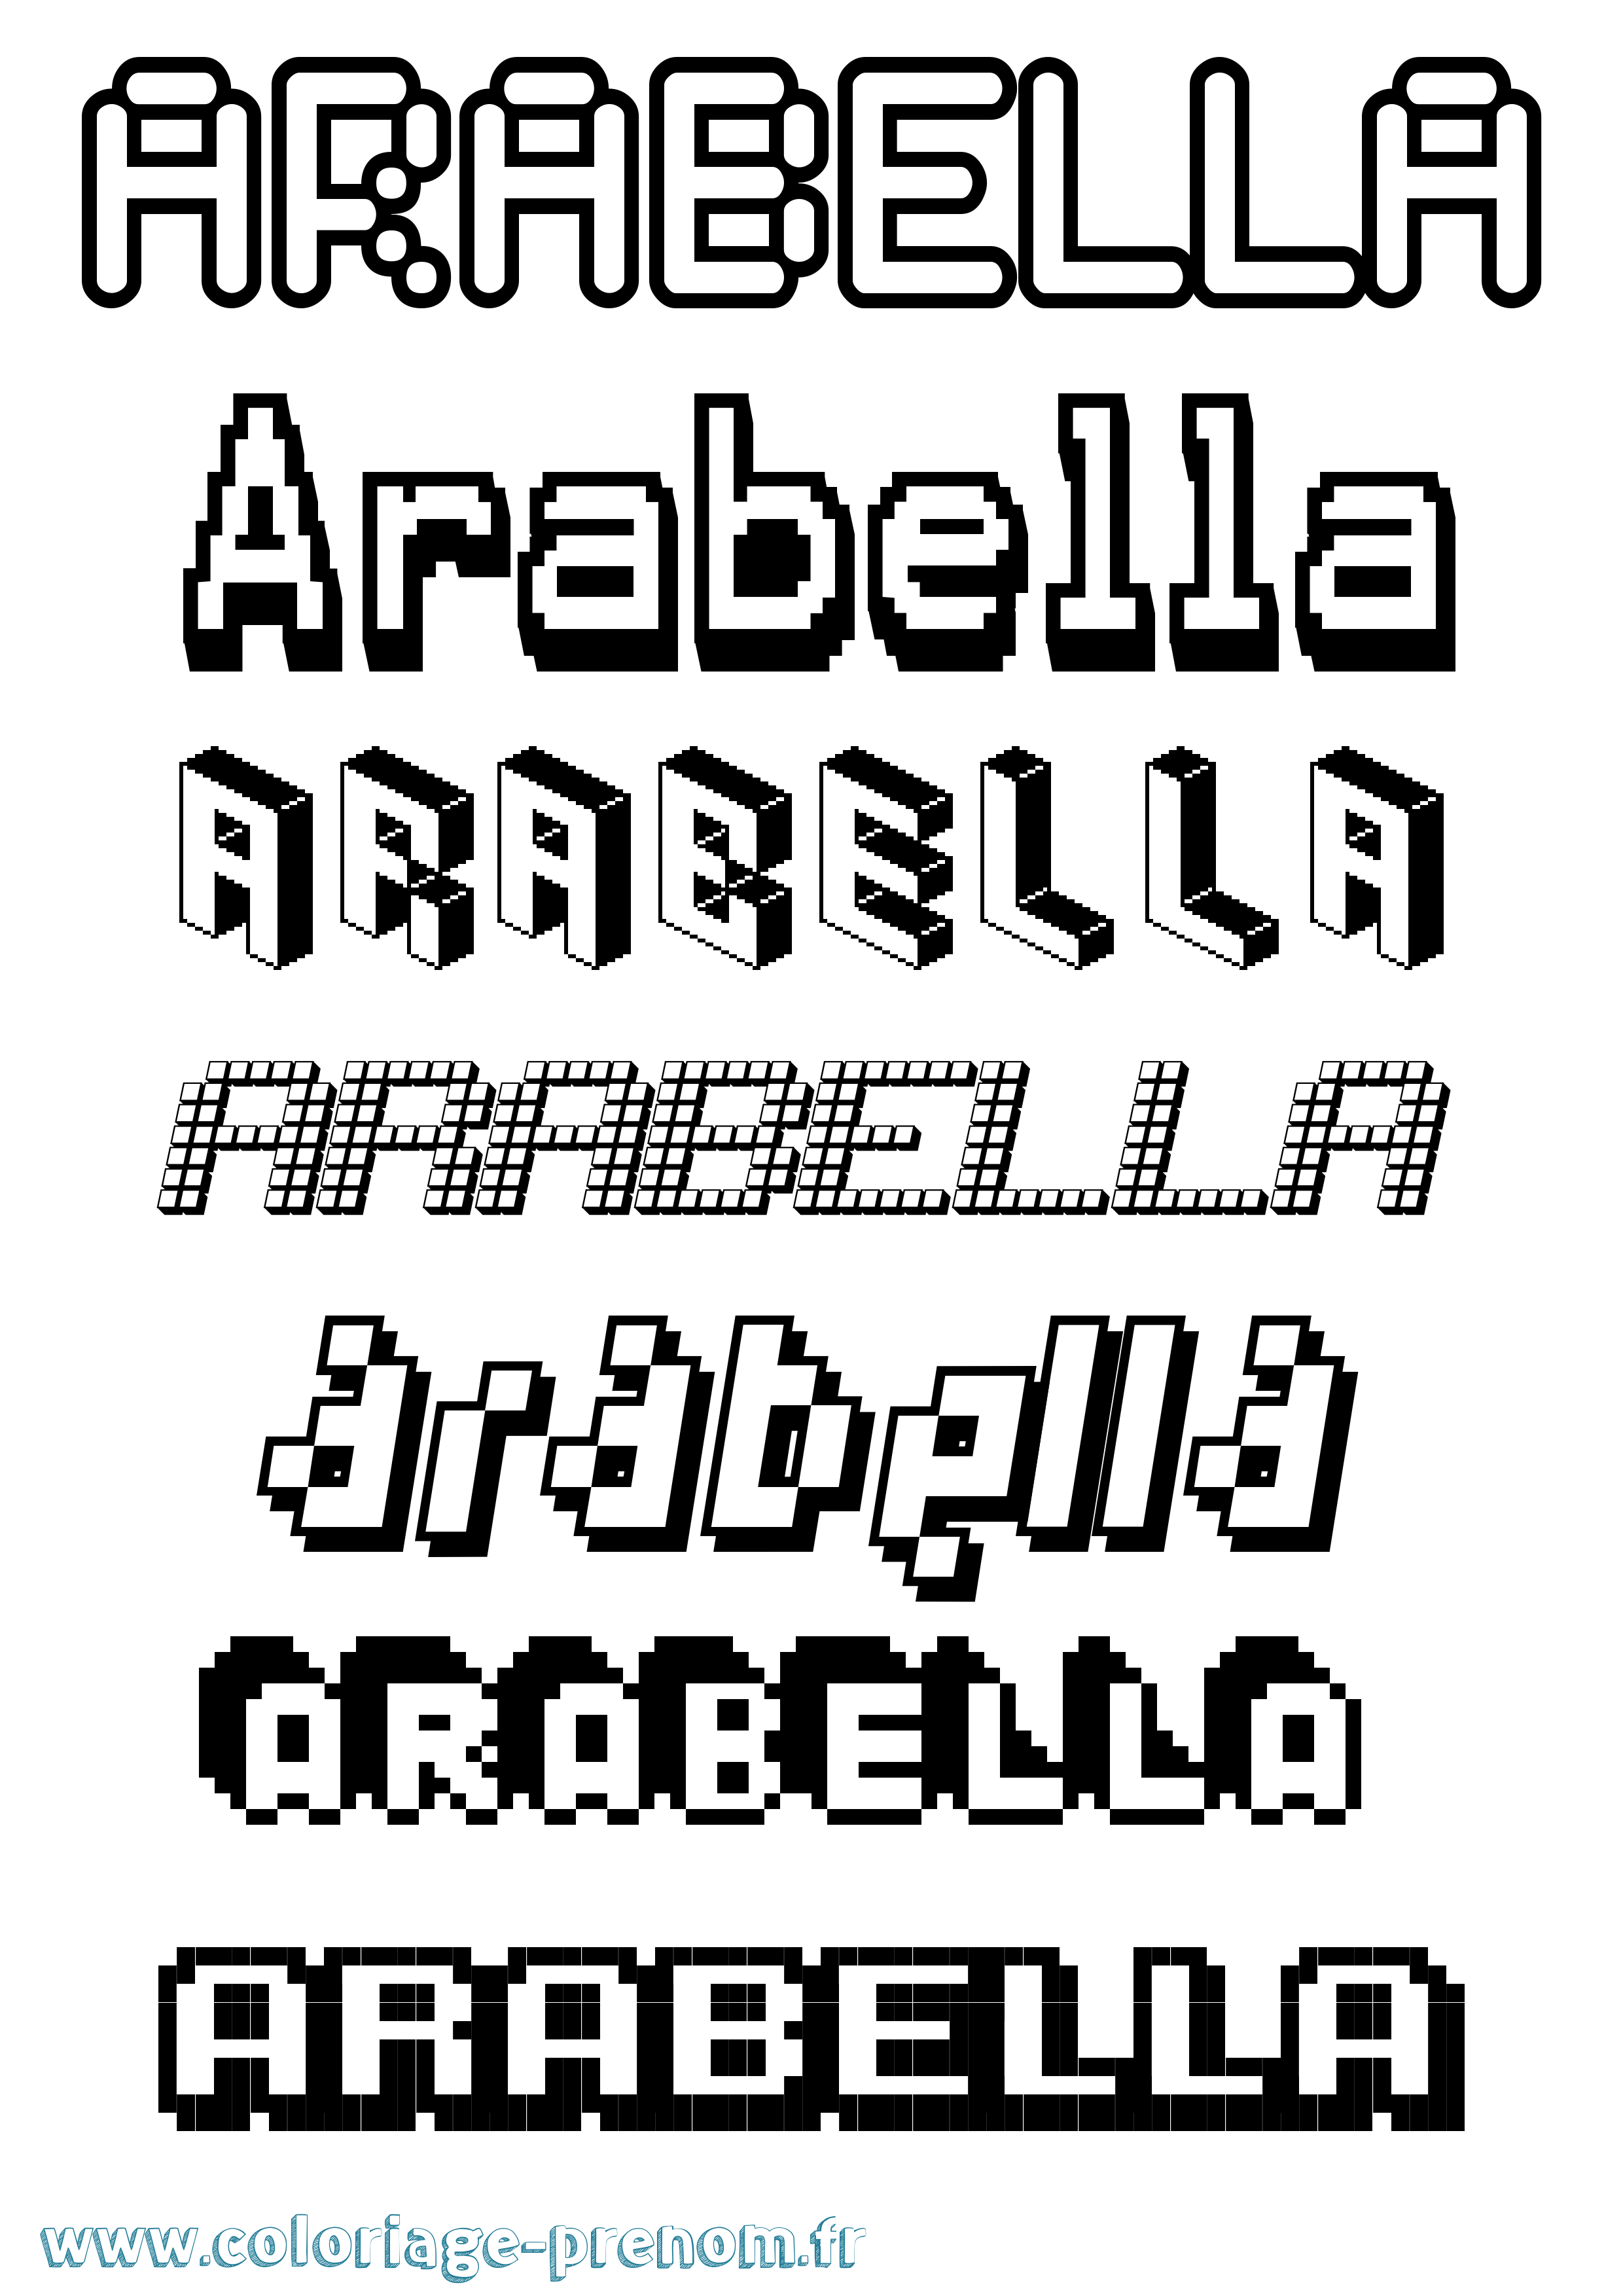 Coloriage prénom Arabella Pixel